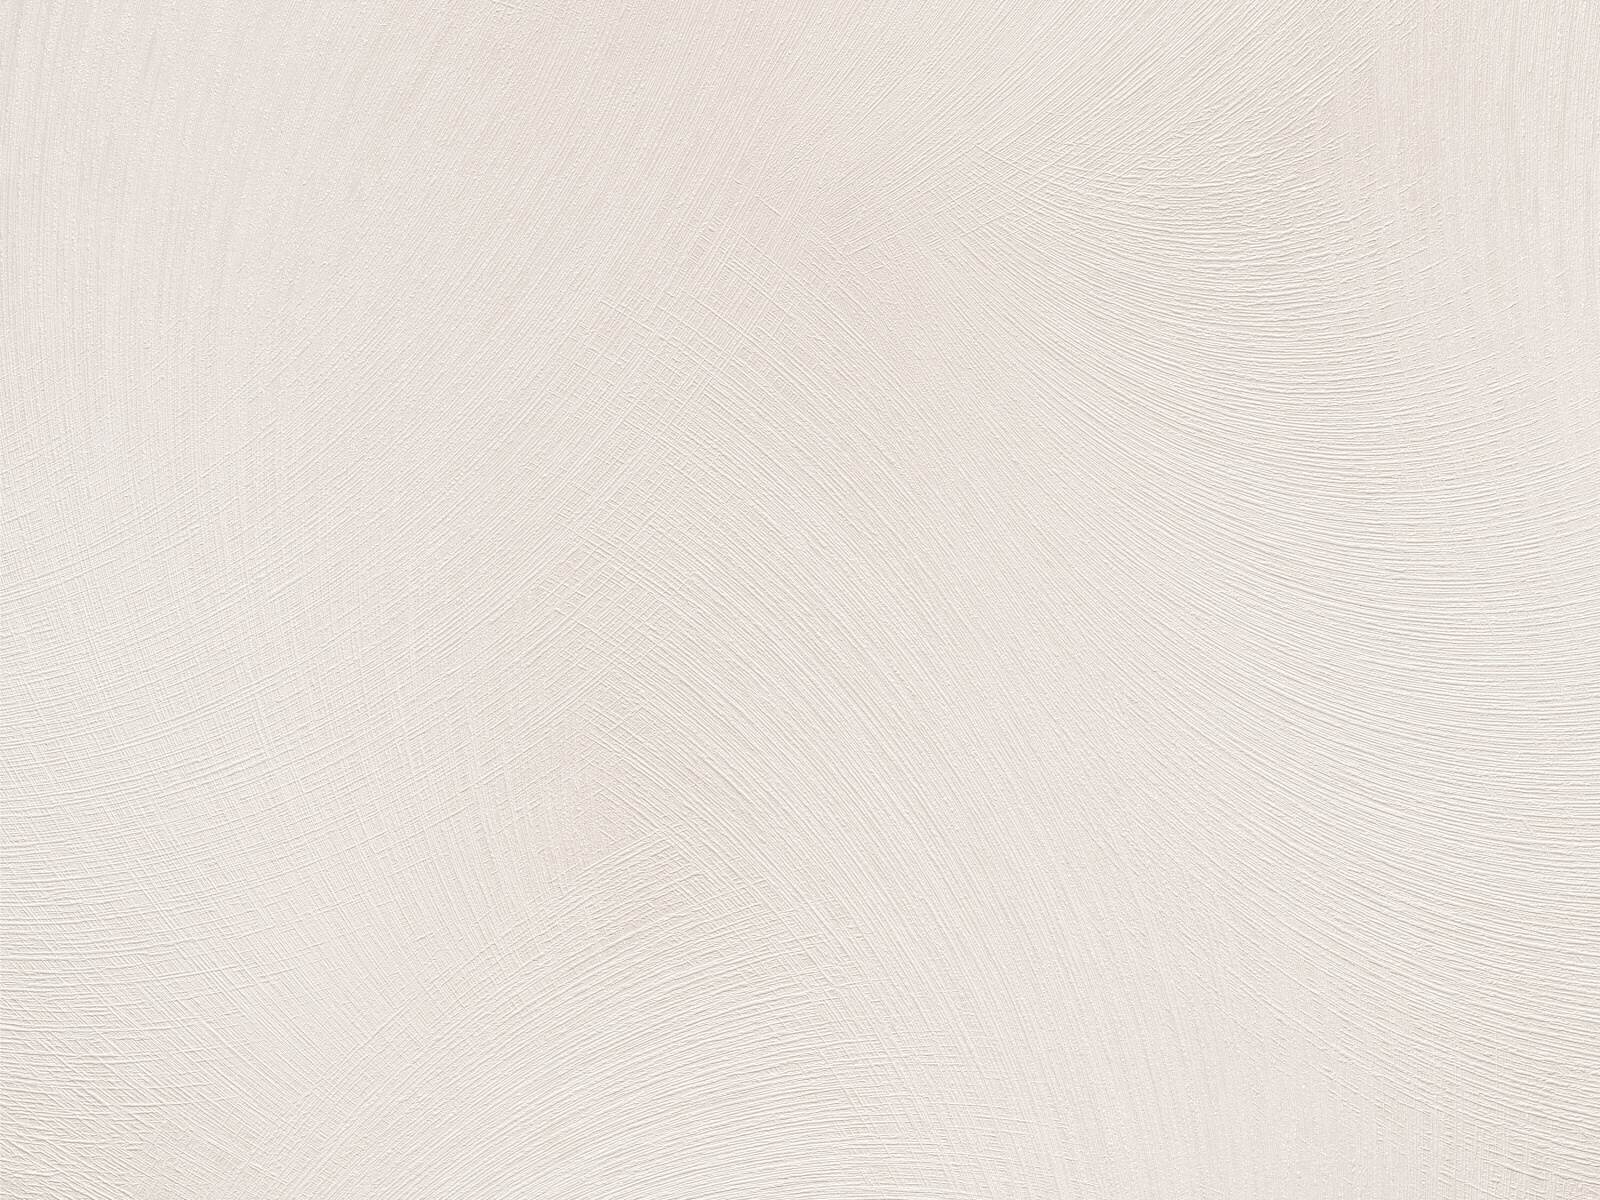 Moderná tapeta s veľkoplošnými čiarami imitujúcimi škrabanú omietku v krémovej farbe s 3D lesklým efektom, ER-602167